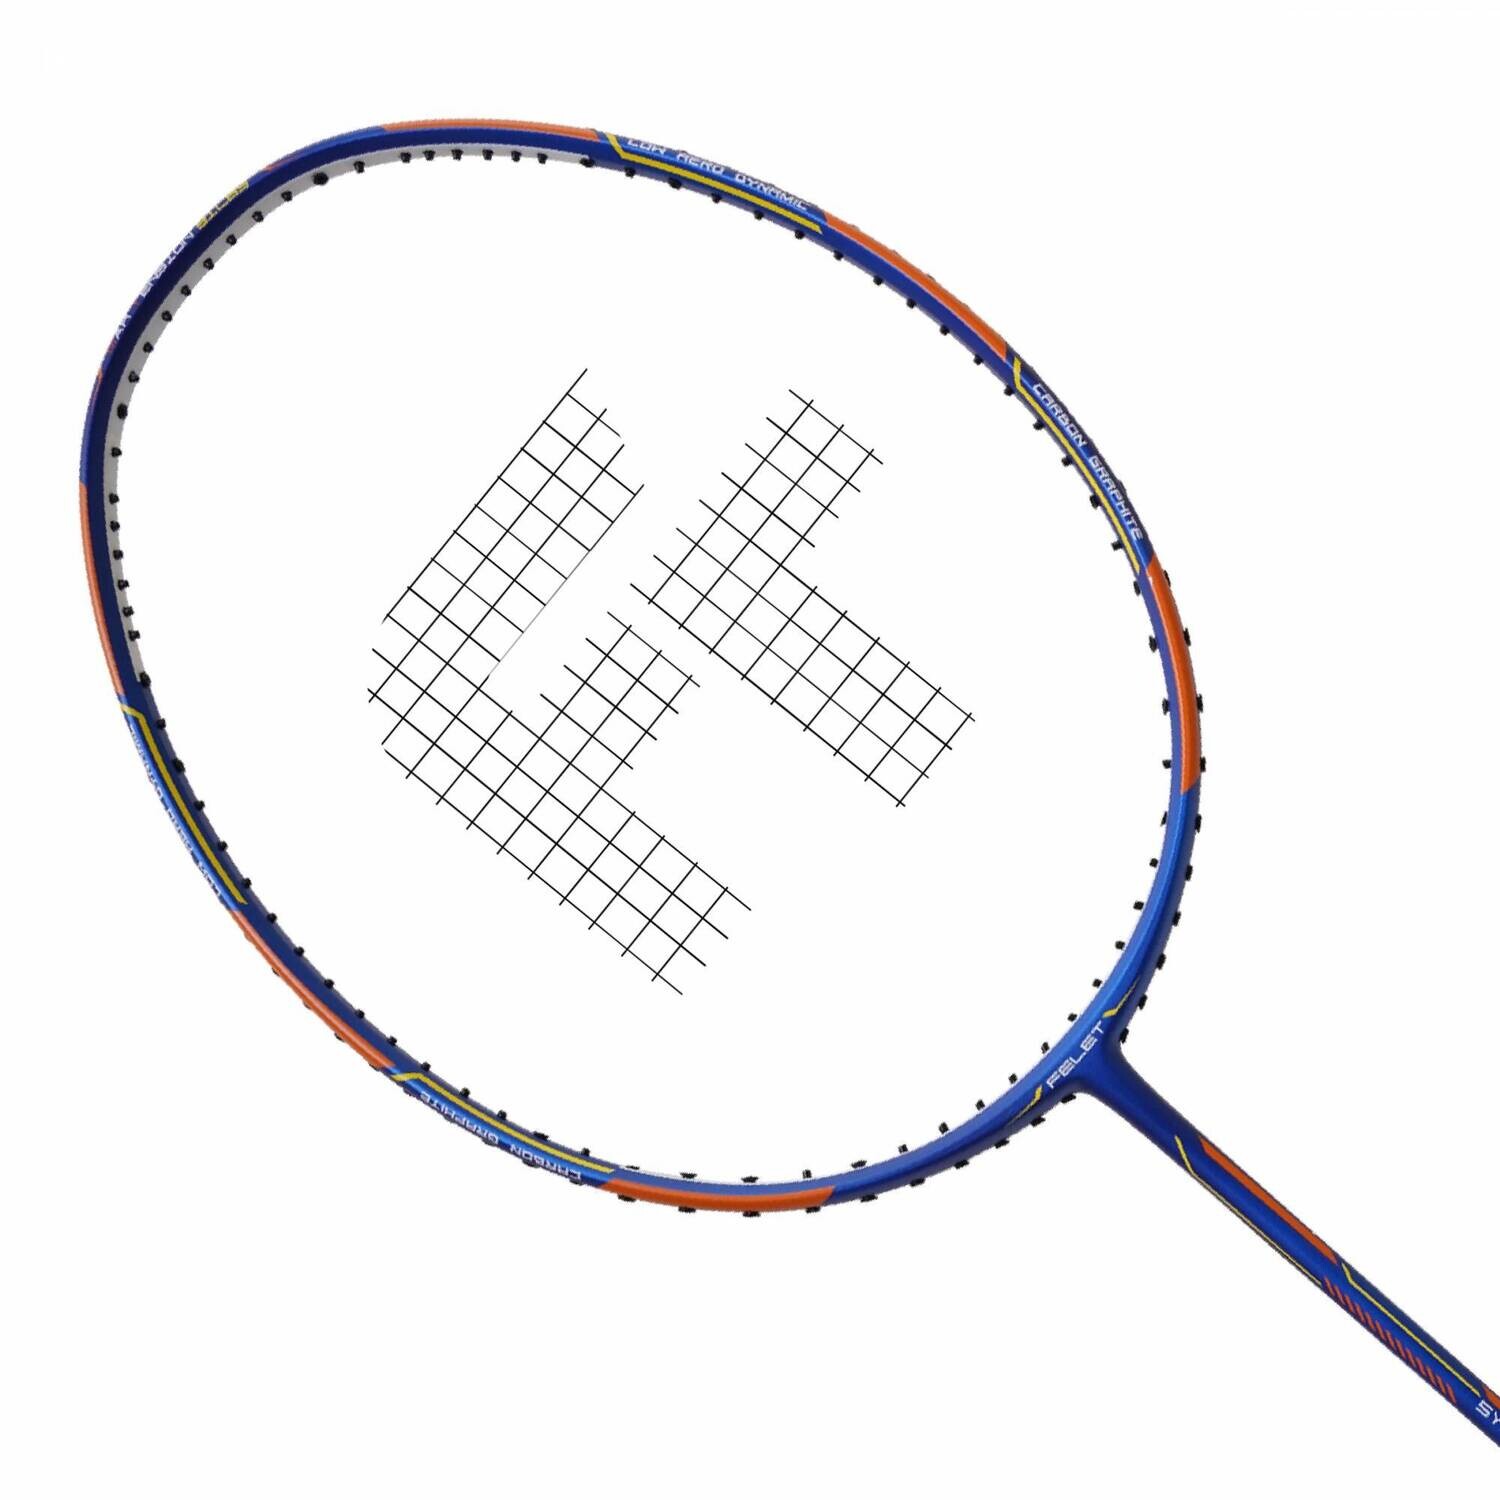 Felet Synergy FT-01 Badminton Racquet CARBON GRAPHITE - BLUE